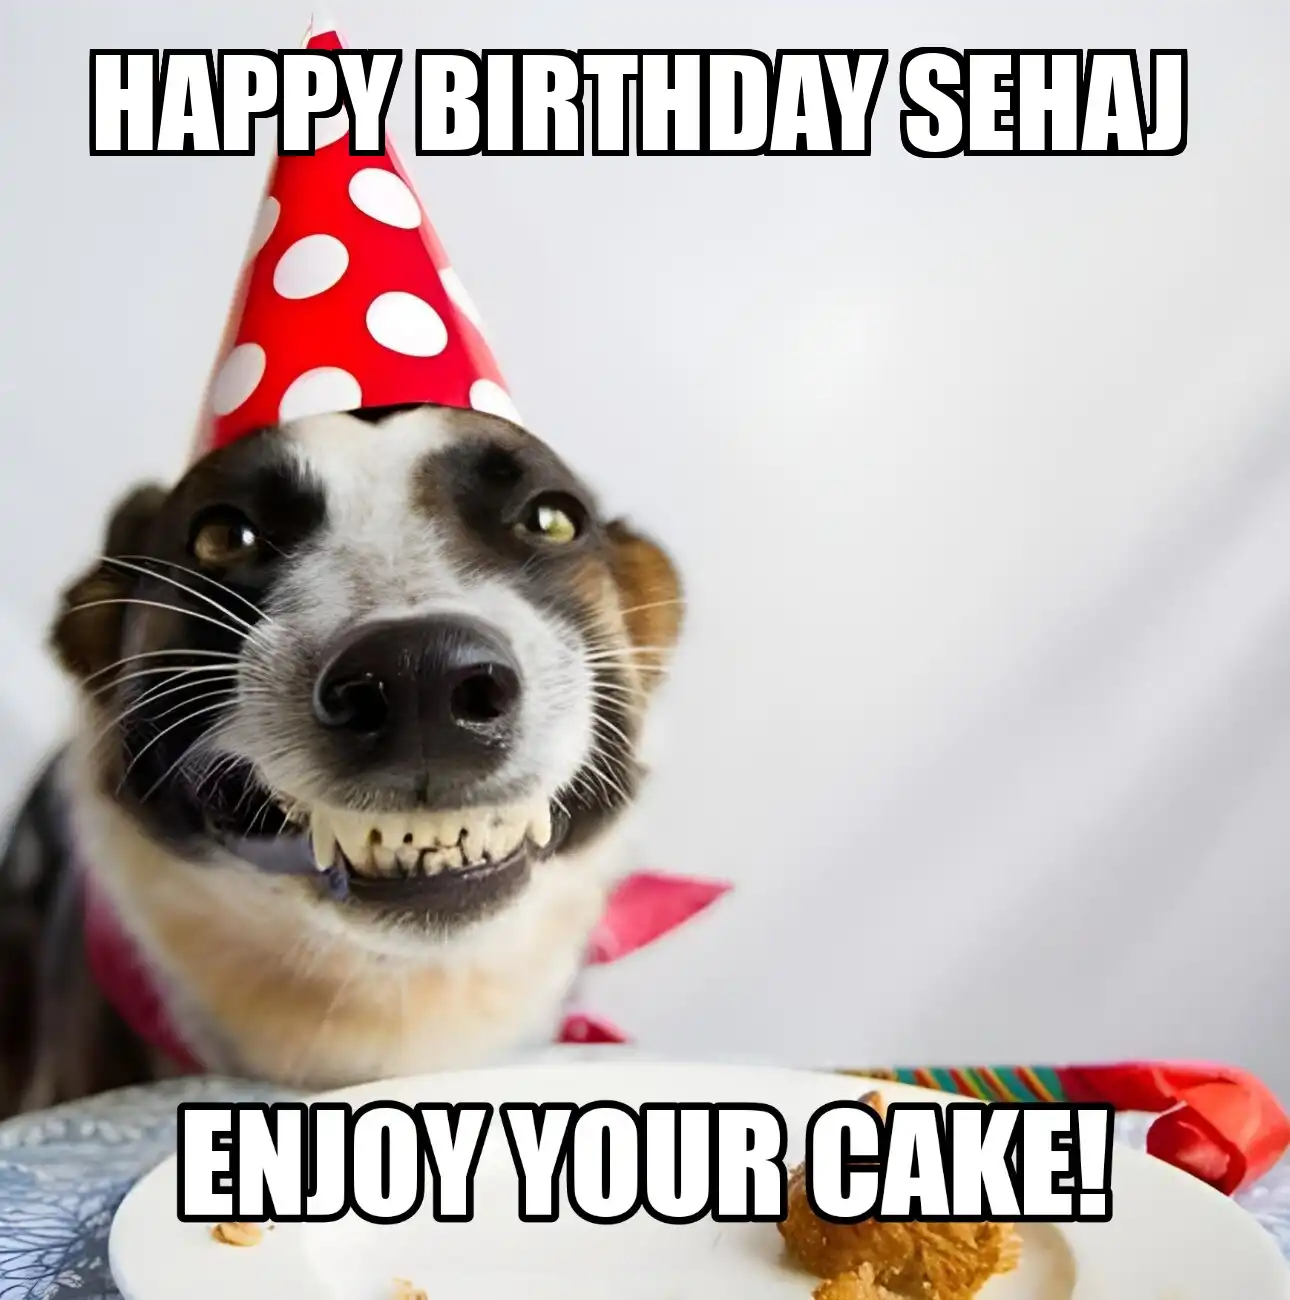 Happy Birthday Sehaj Enjoy Your Cake Dog Meme